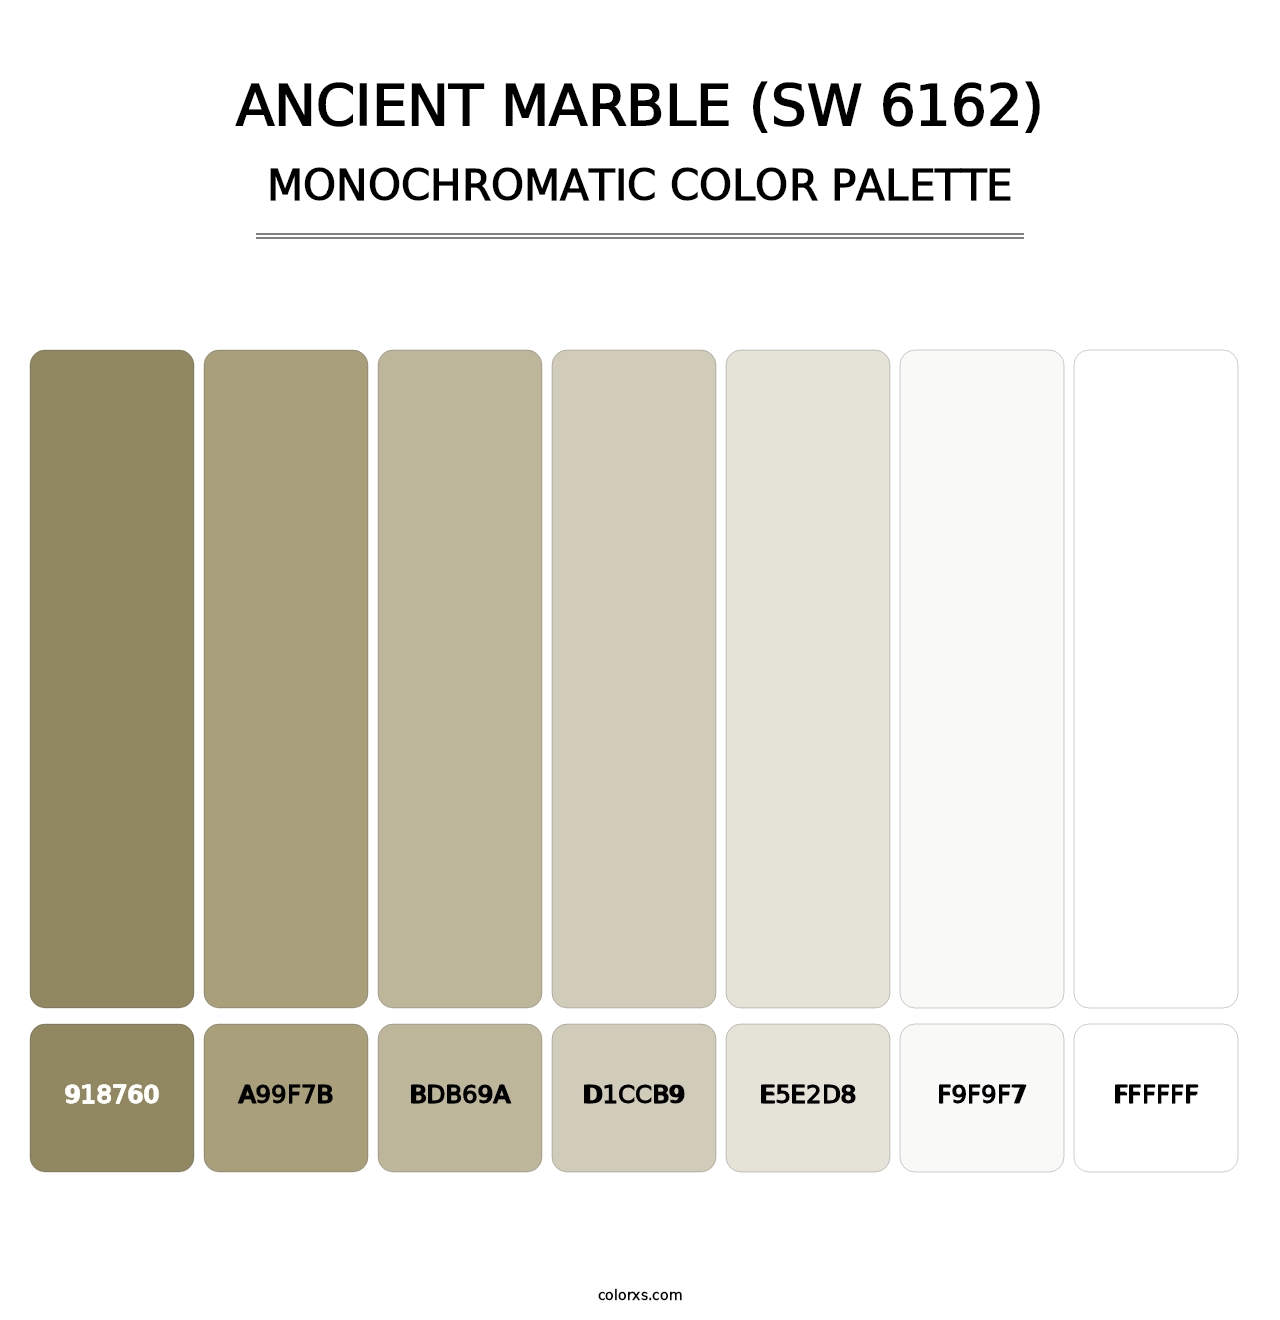 Ancient Marble (SW 6162) - Monochromatic Color Palette